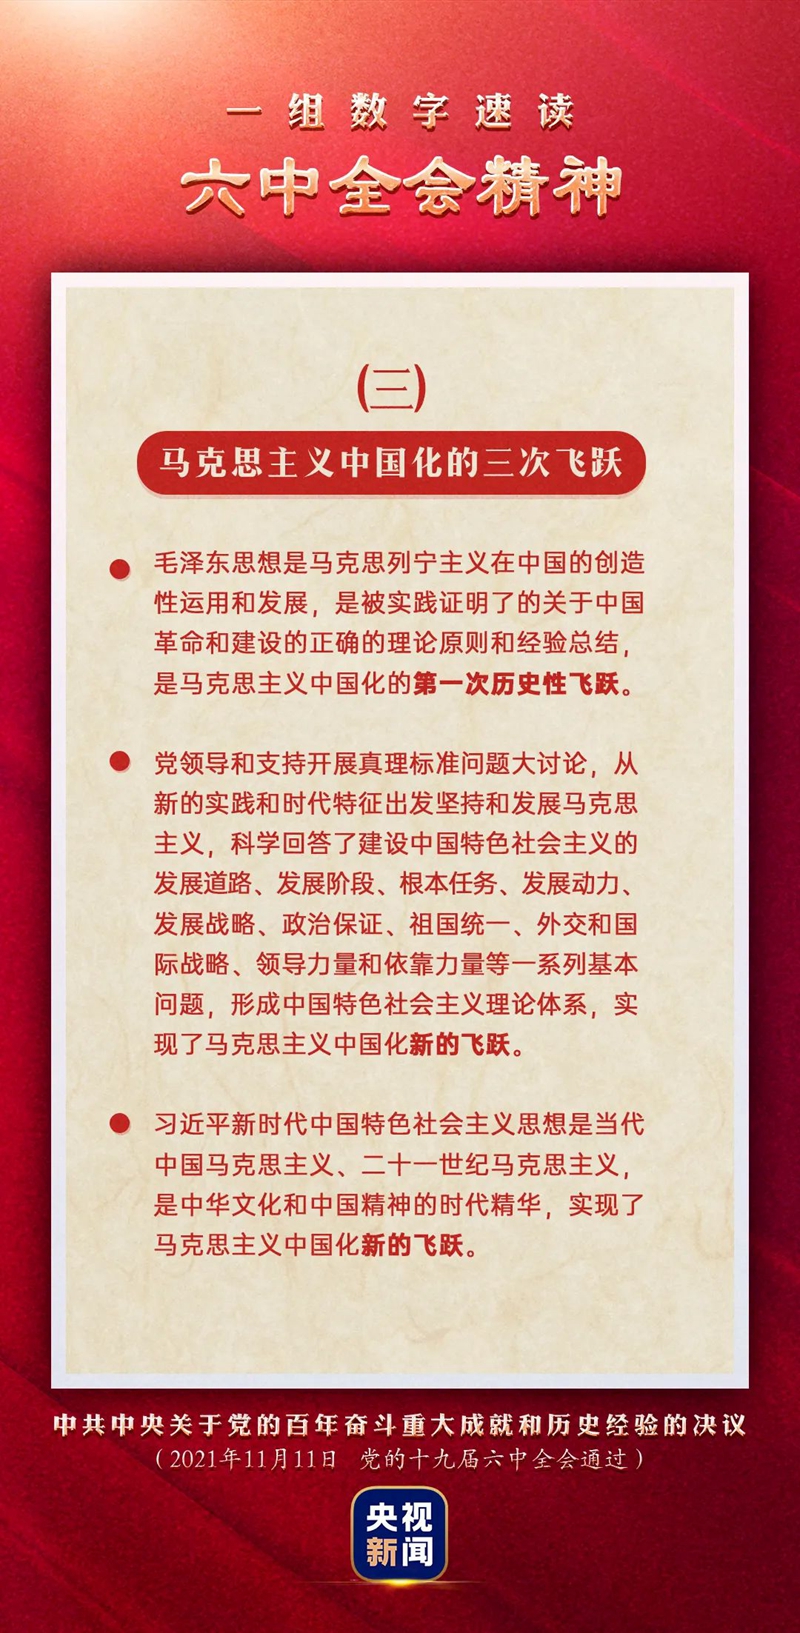 3.马克思主义中国化的三次飞跃（12月6日）.jpg